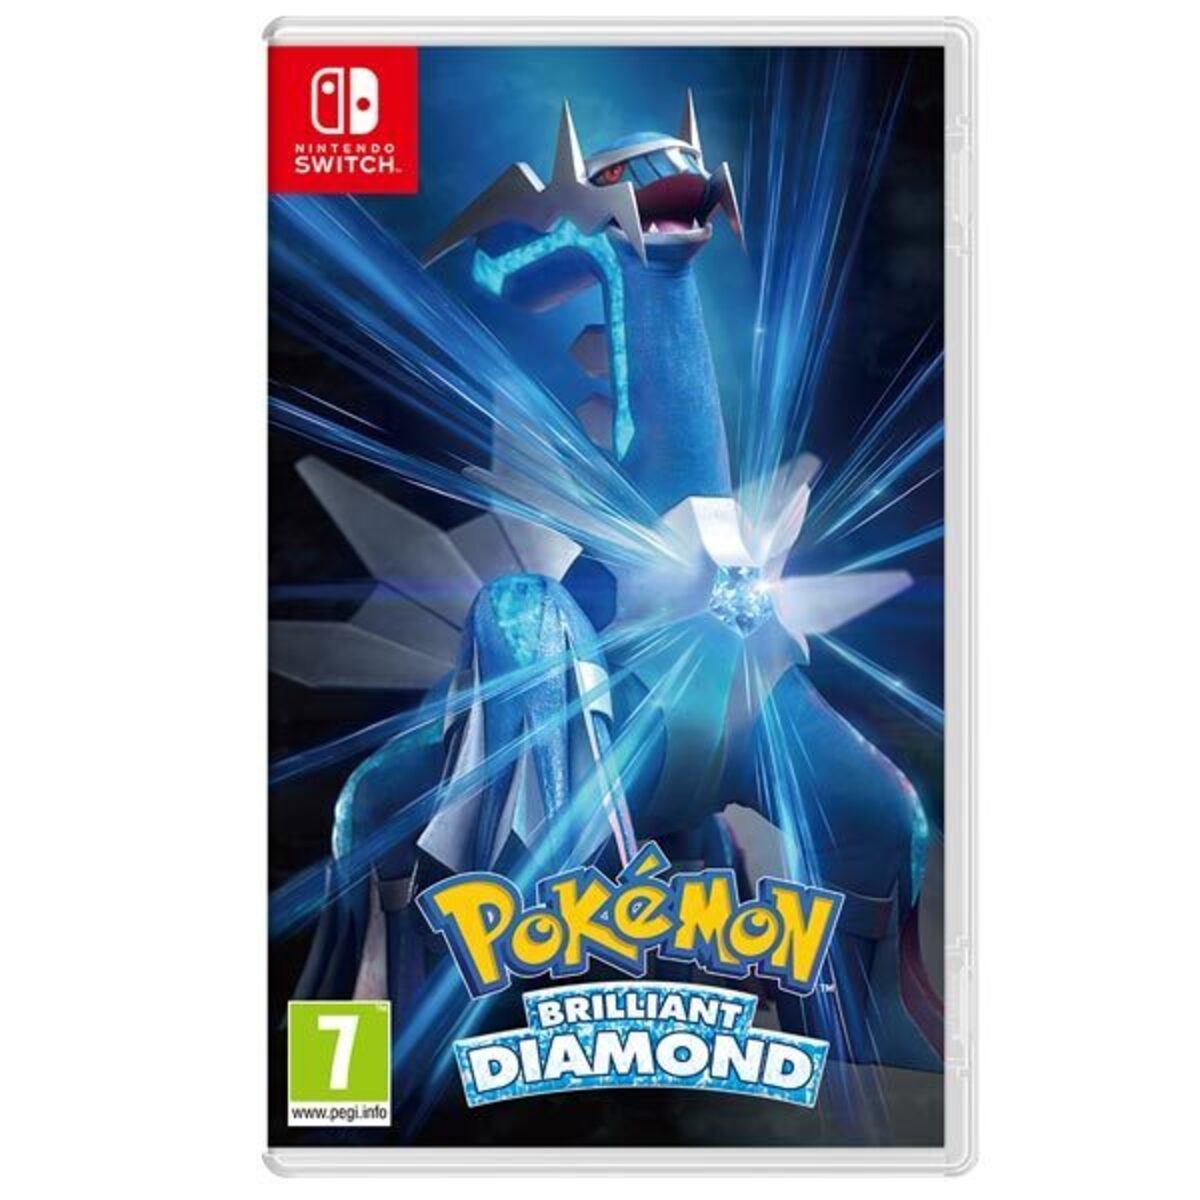 Photos - Game Nintendo Pokémon Brilliant Diamond - Switch 